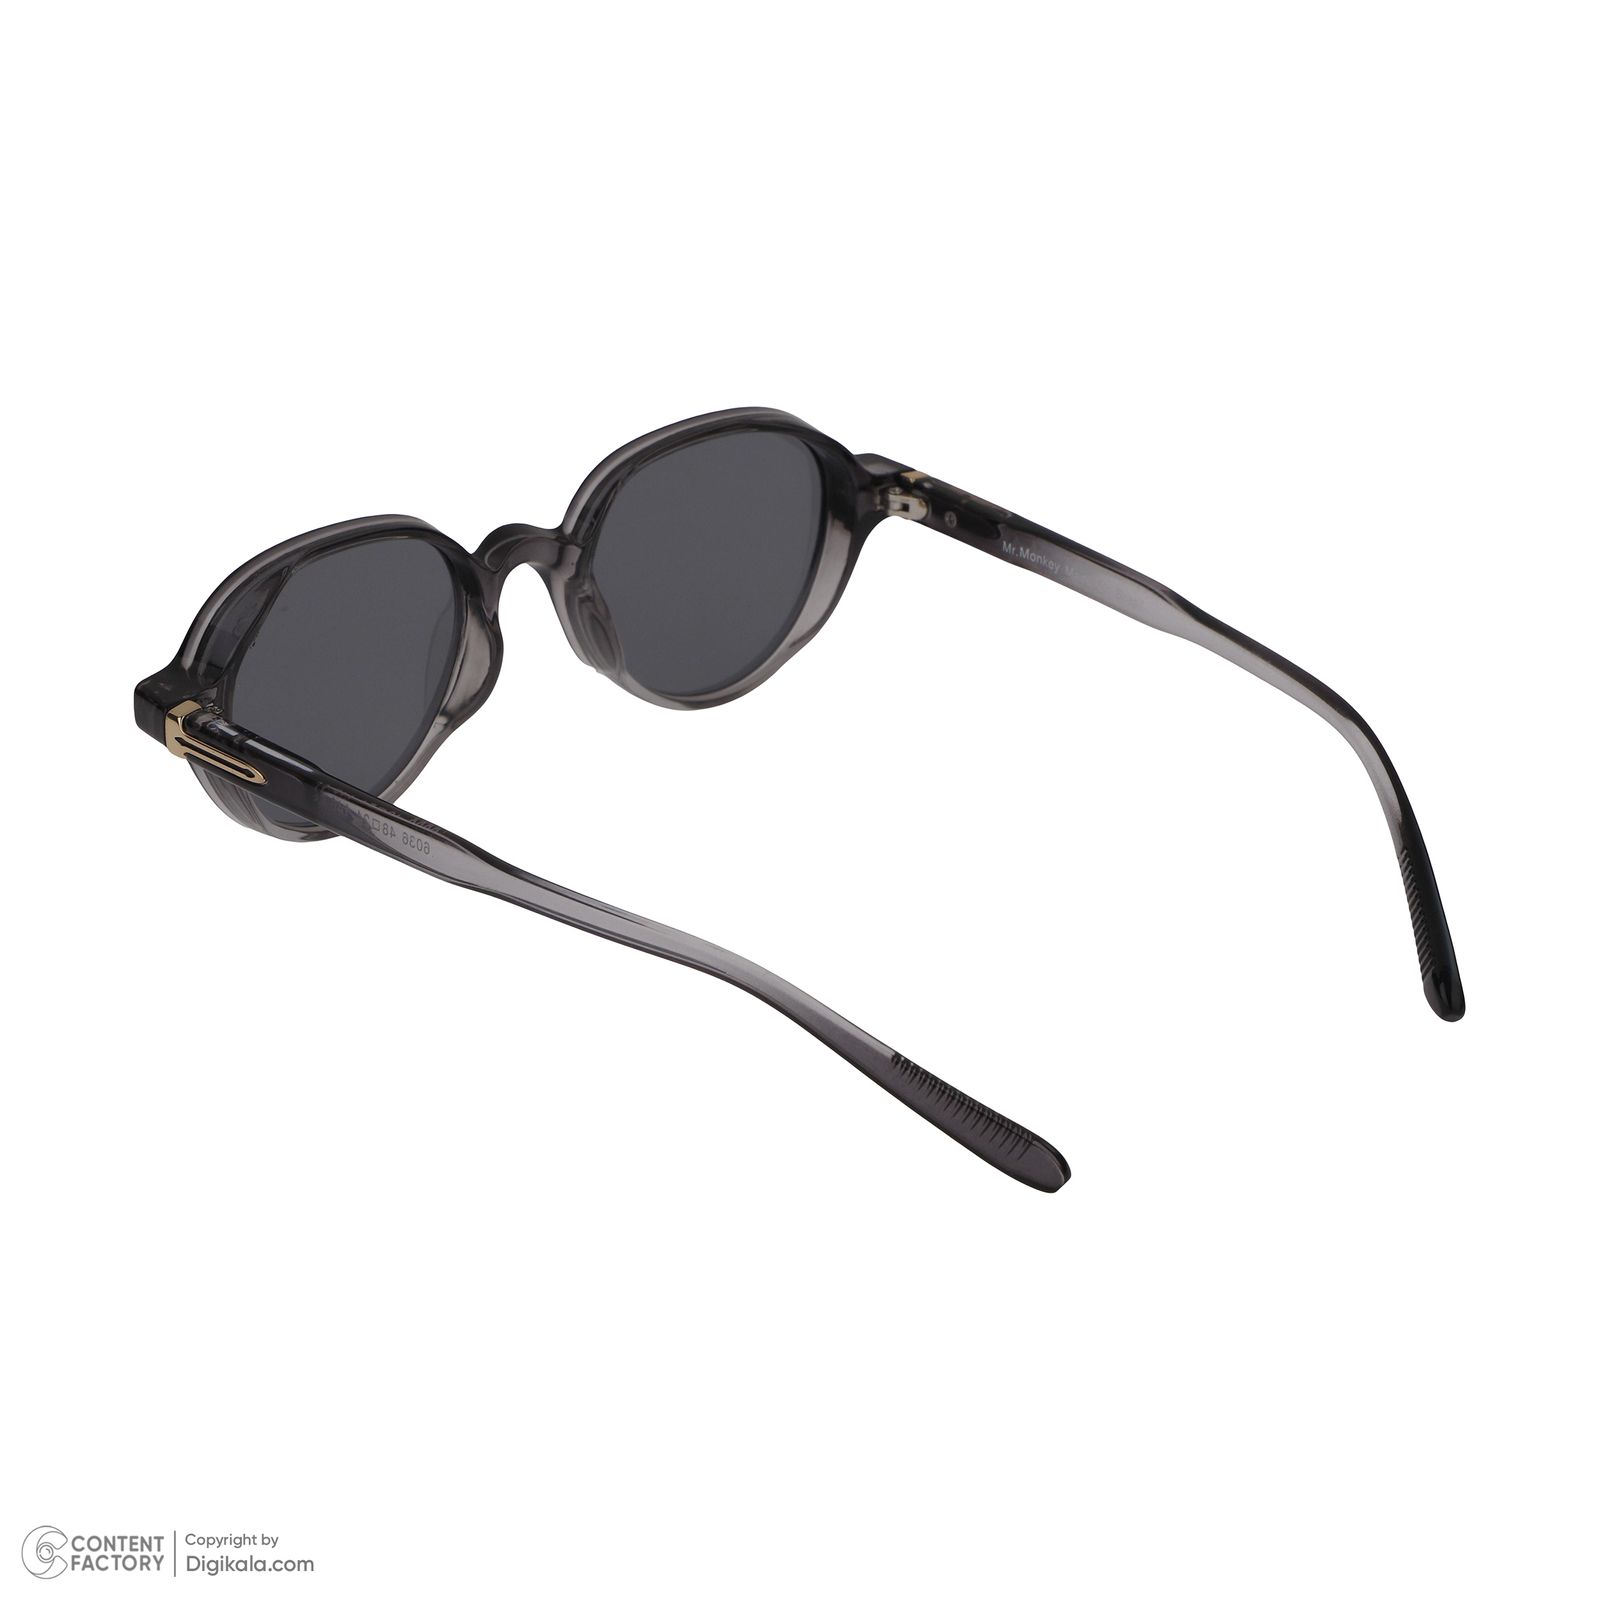 عینک آفتابی مستر مانکی مدل 6036 gr -  - 5